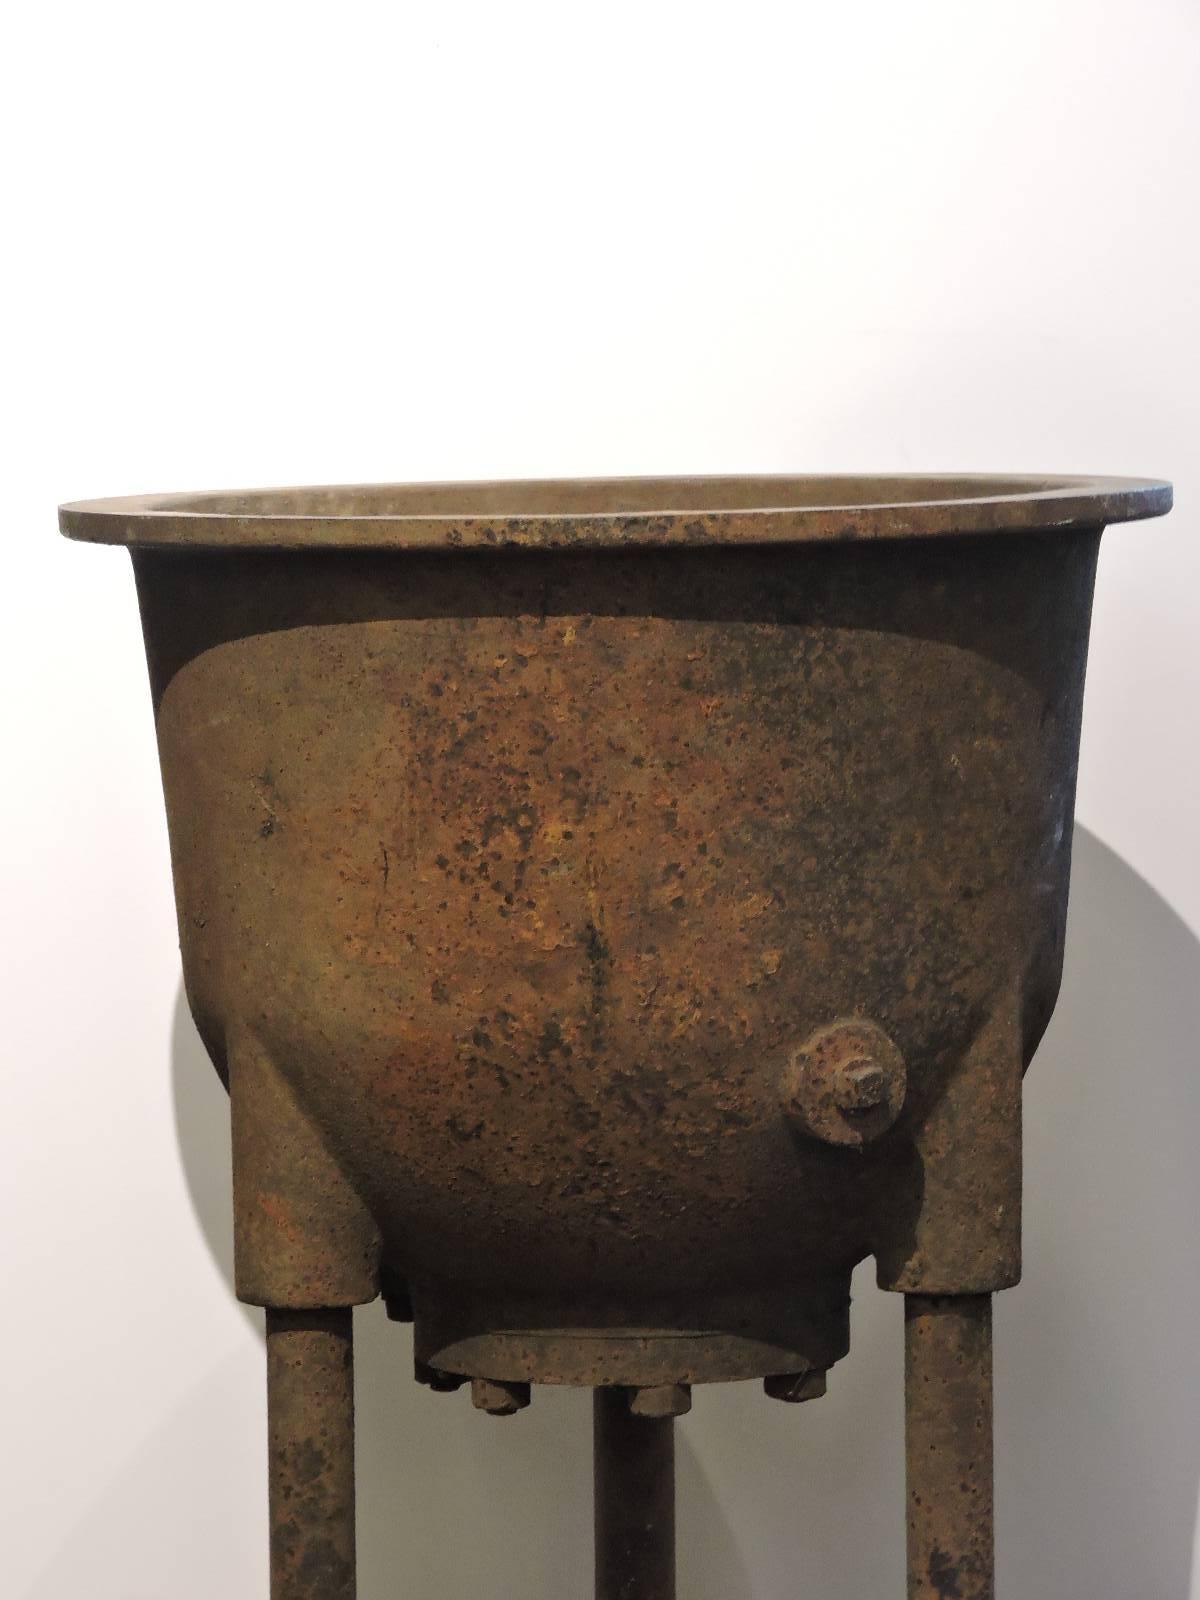 antique cauldrons for sale